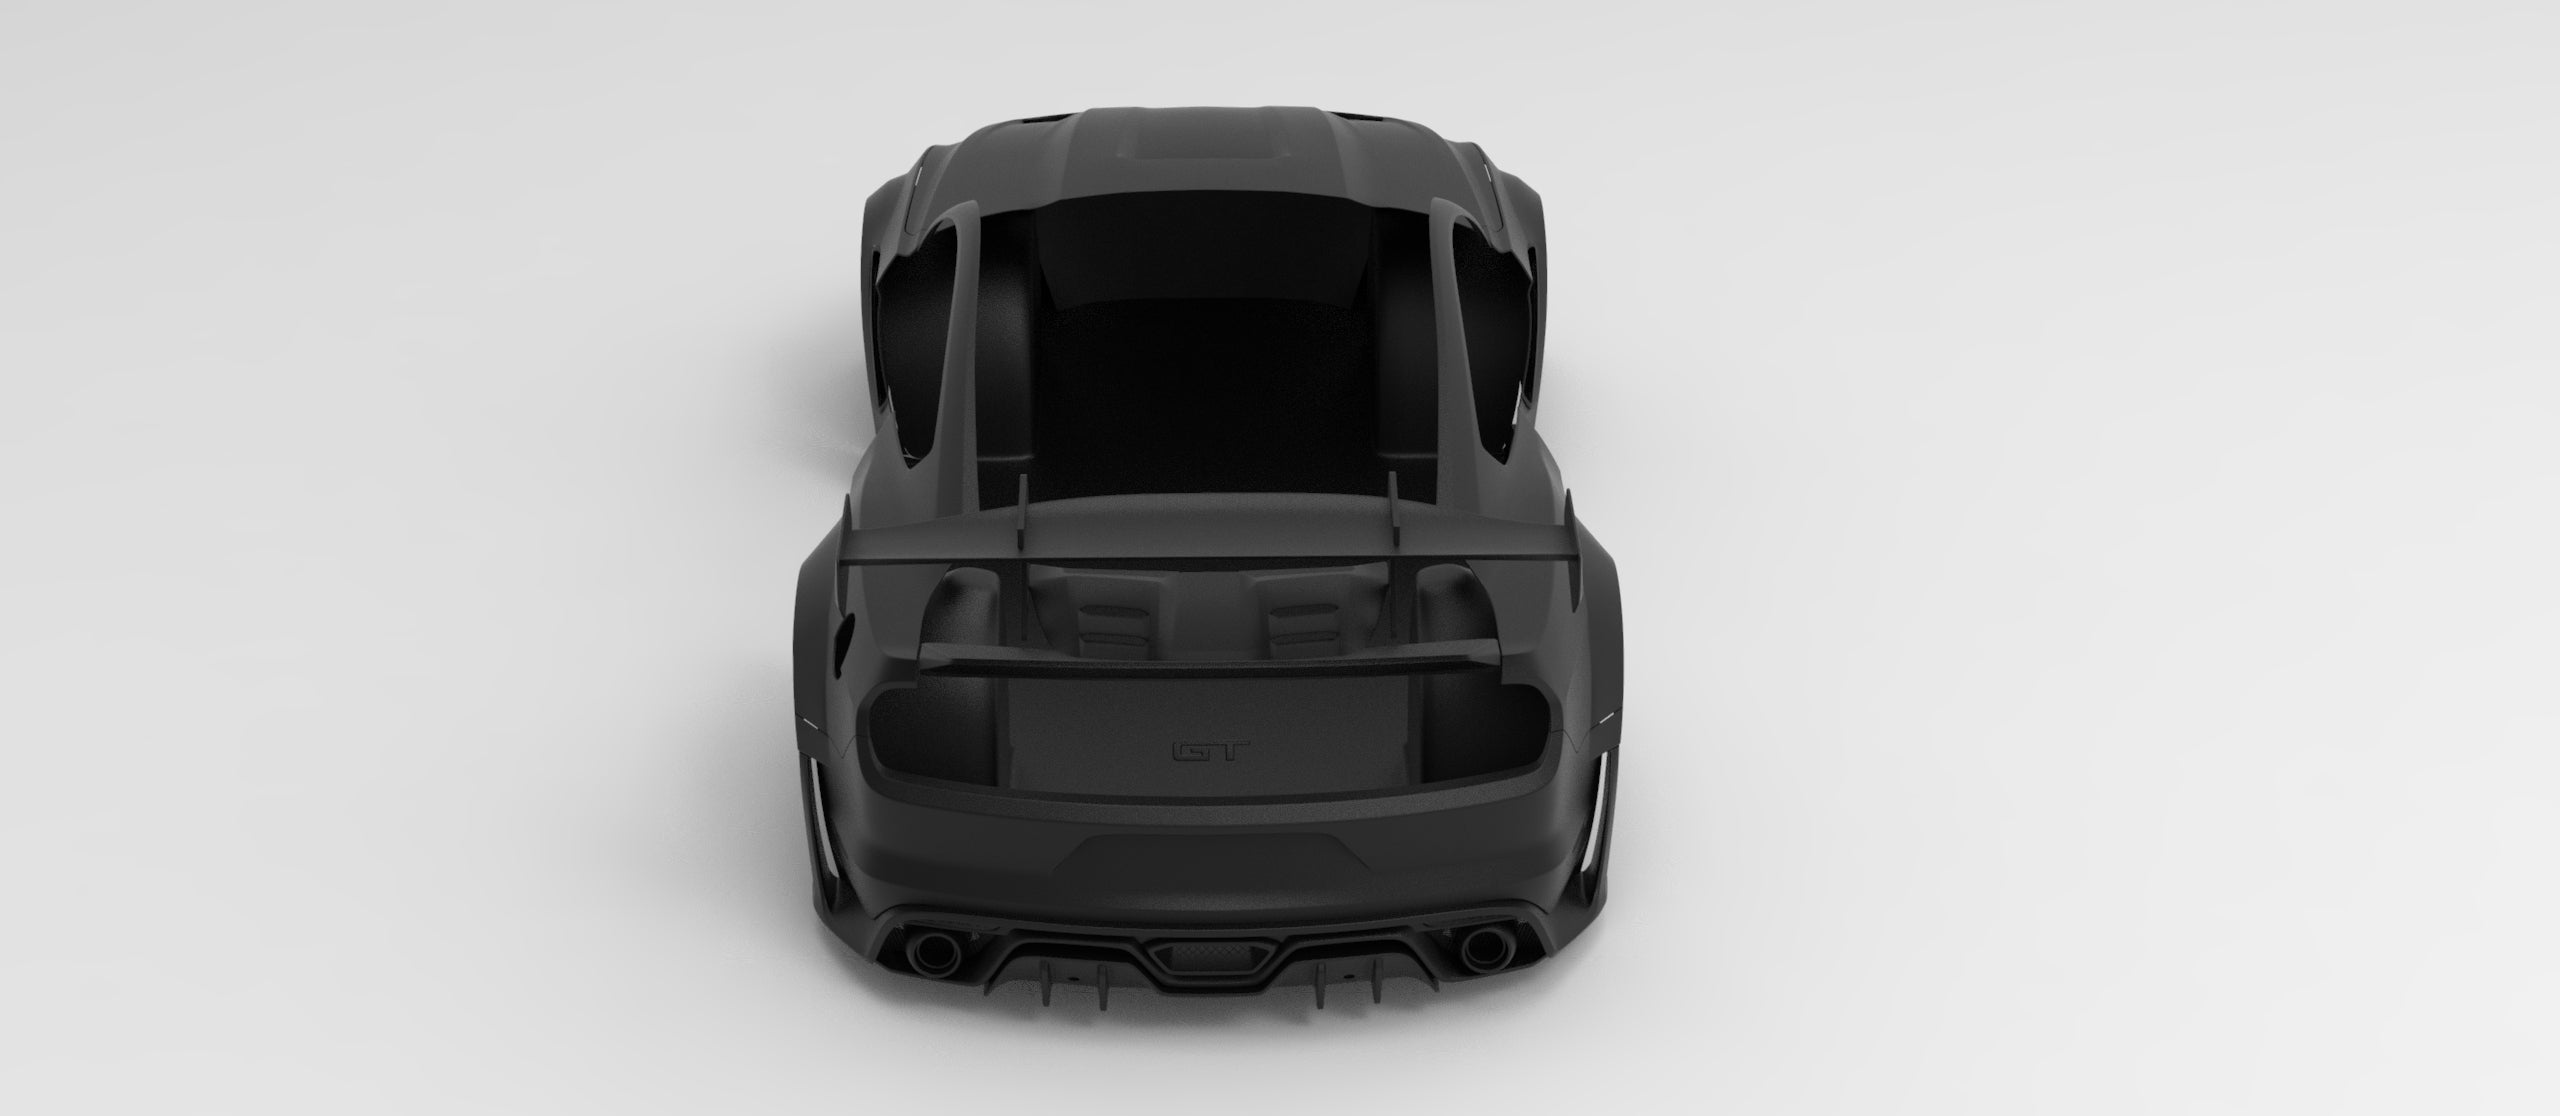 ROBOT CRAFTSMAN "Cavalier"  Hood Bonnet For Ford Mustang S550.1 2015 - 2017  FRP or Carbon Fiber